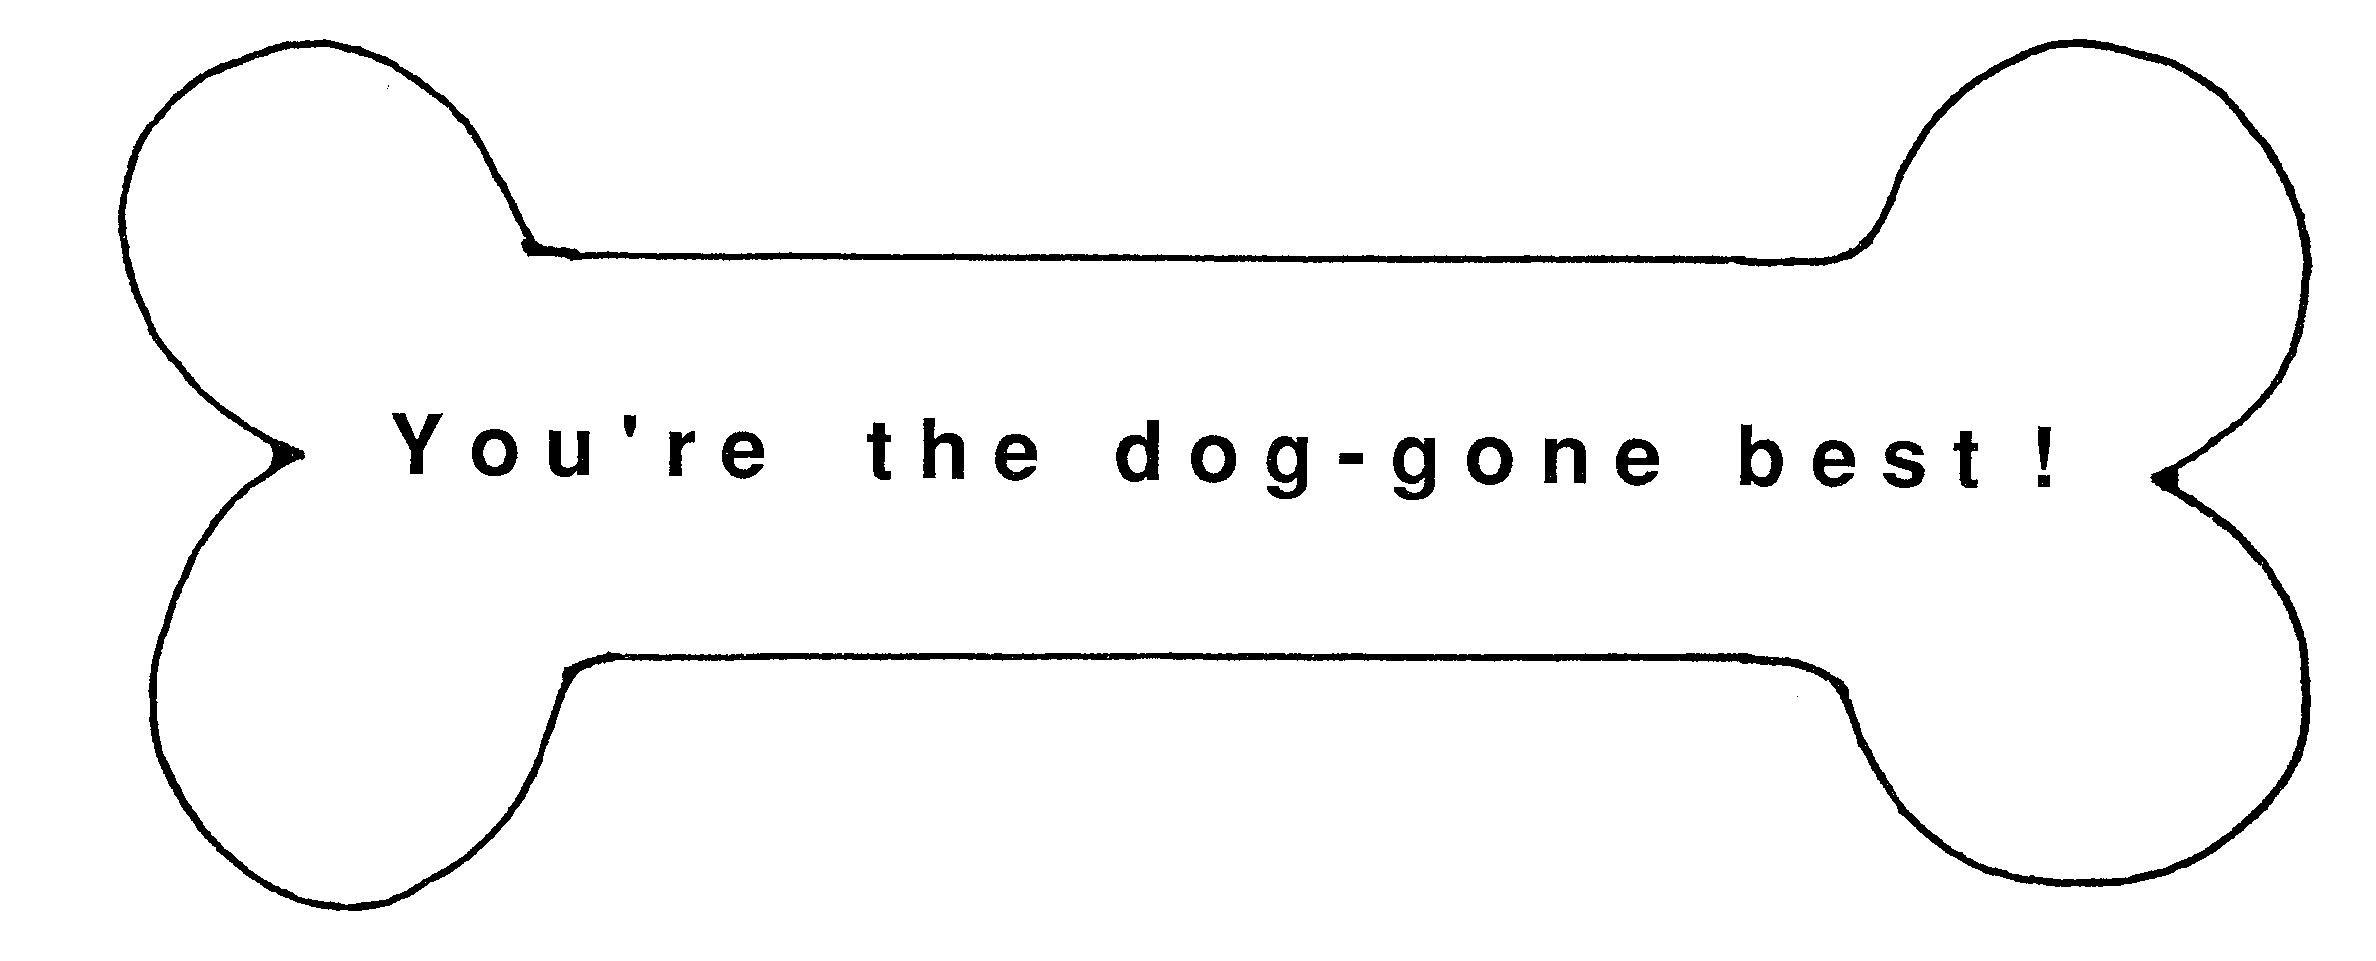 Dog bone dog clip art images image 2